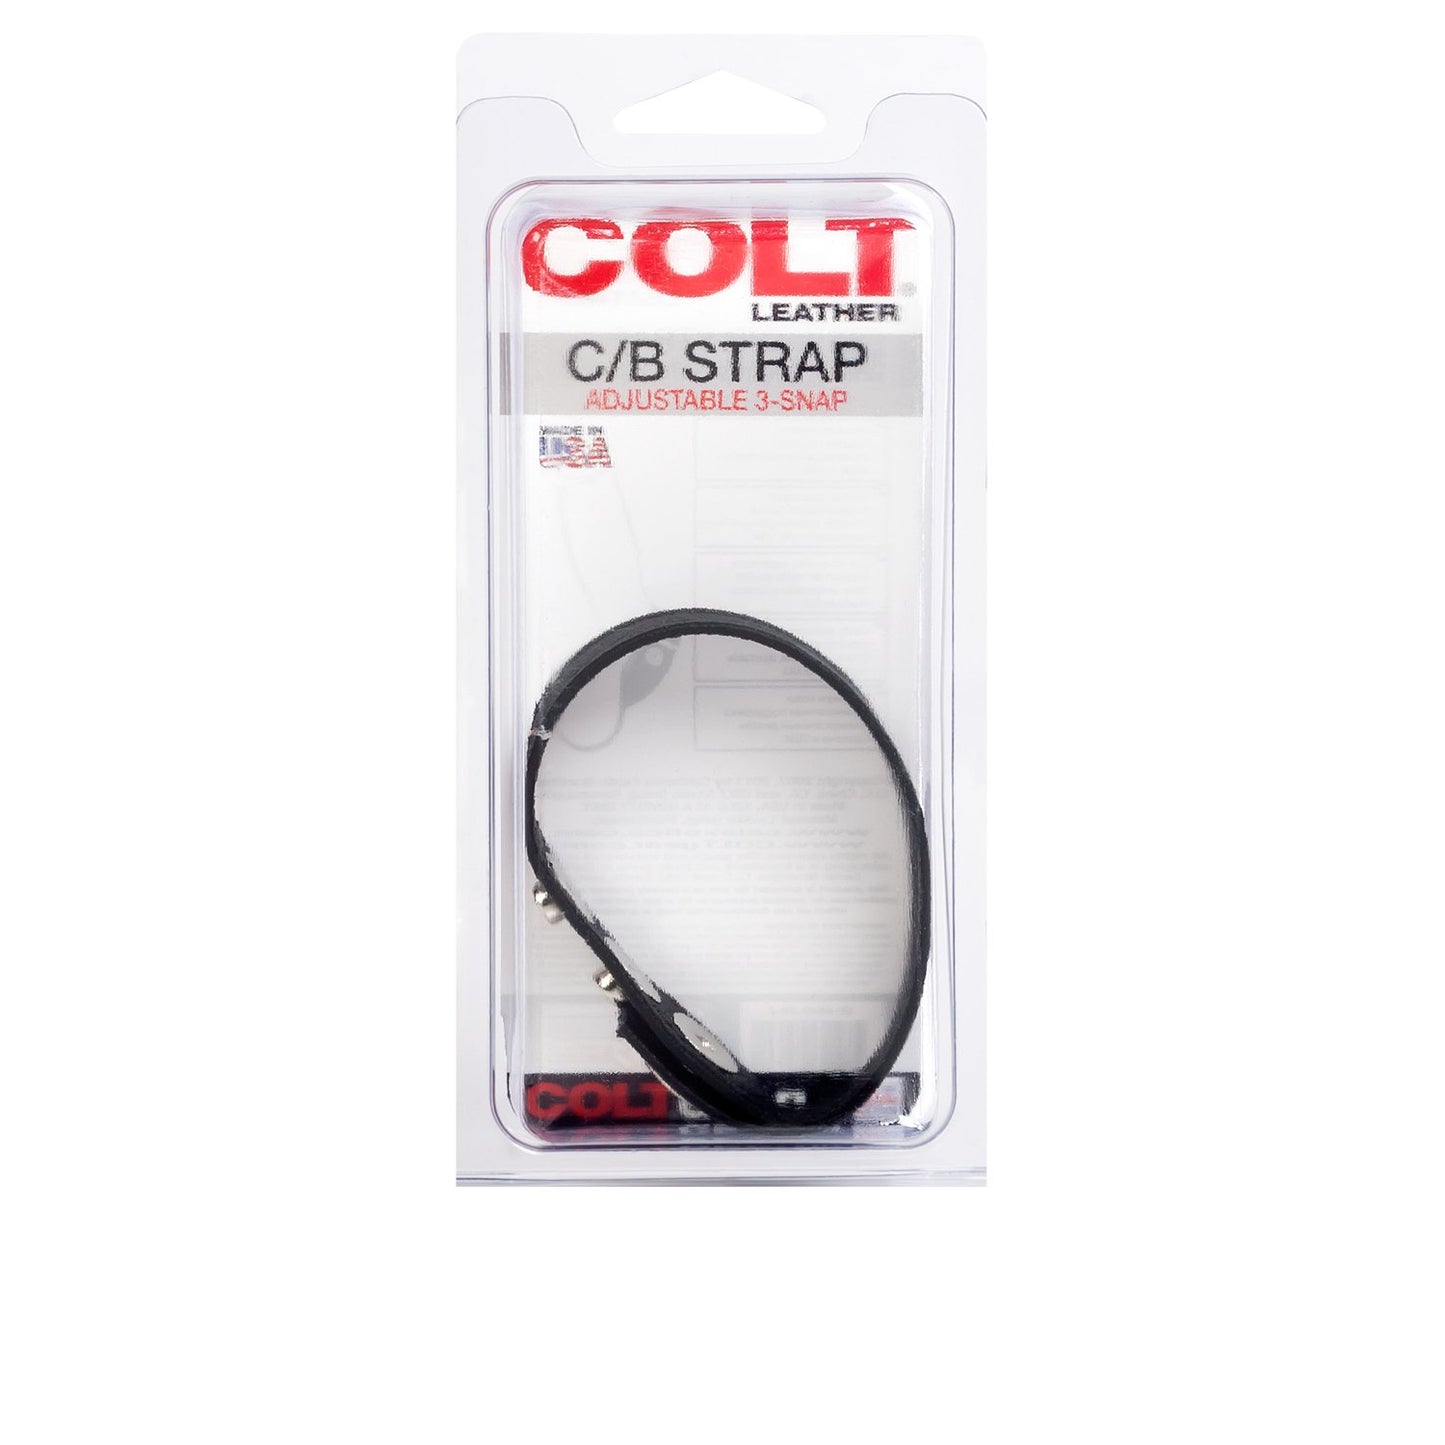 COLT Leather C/B Strap Adjustable 3-Snap